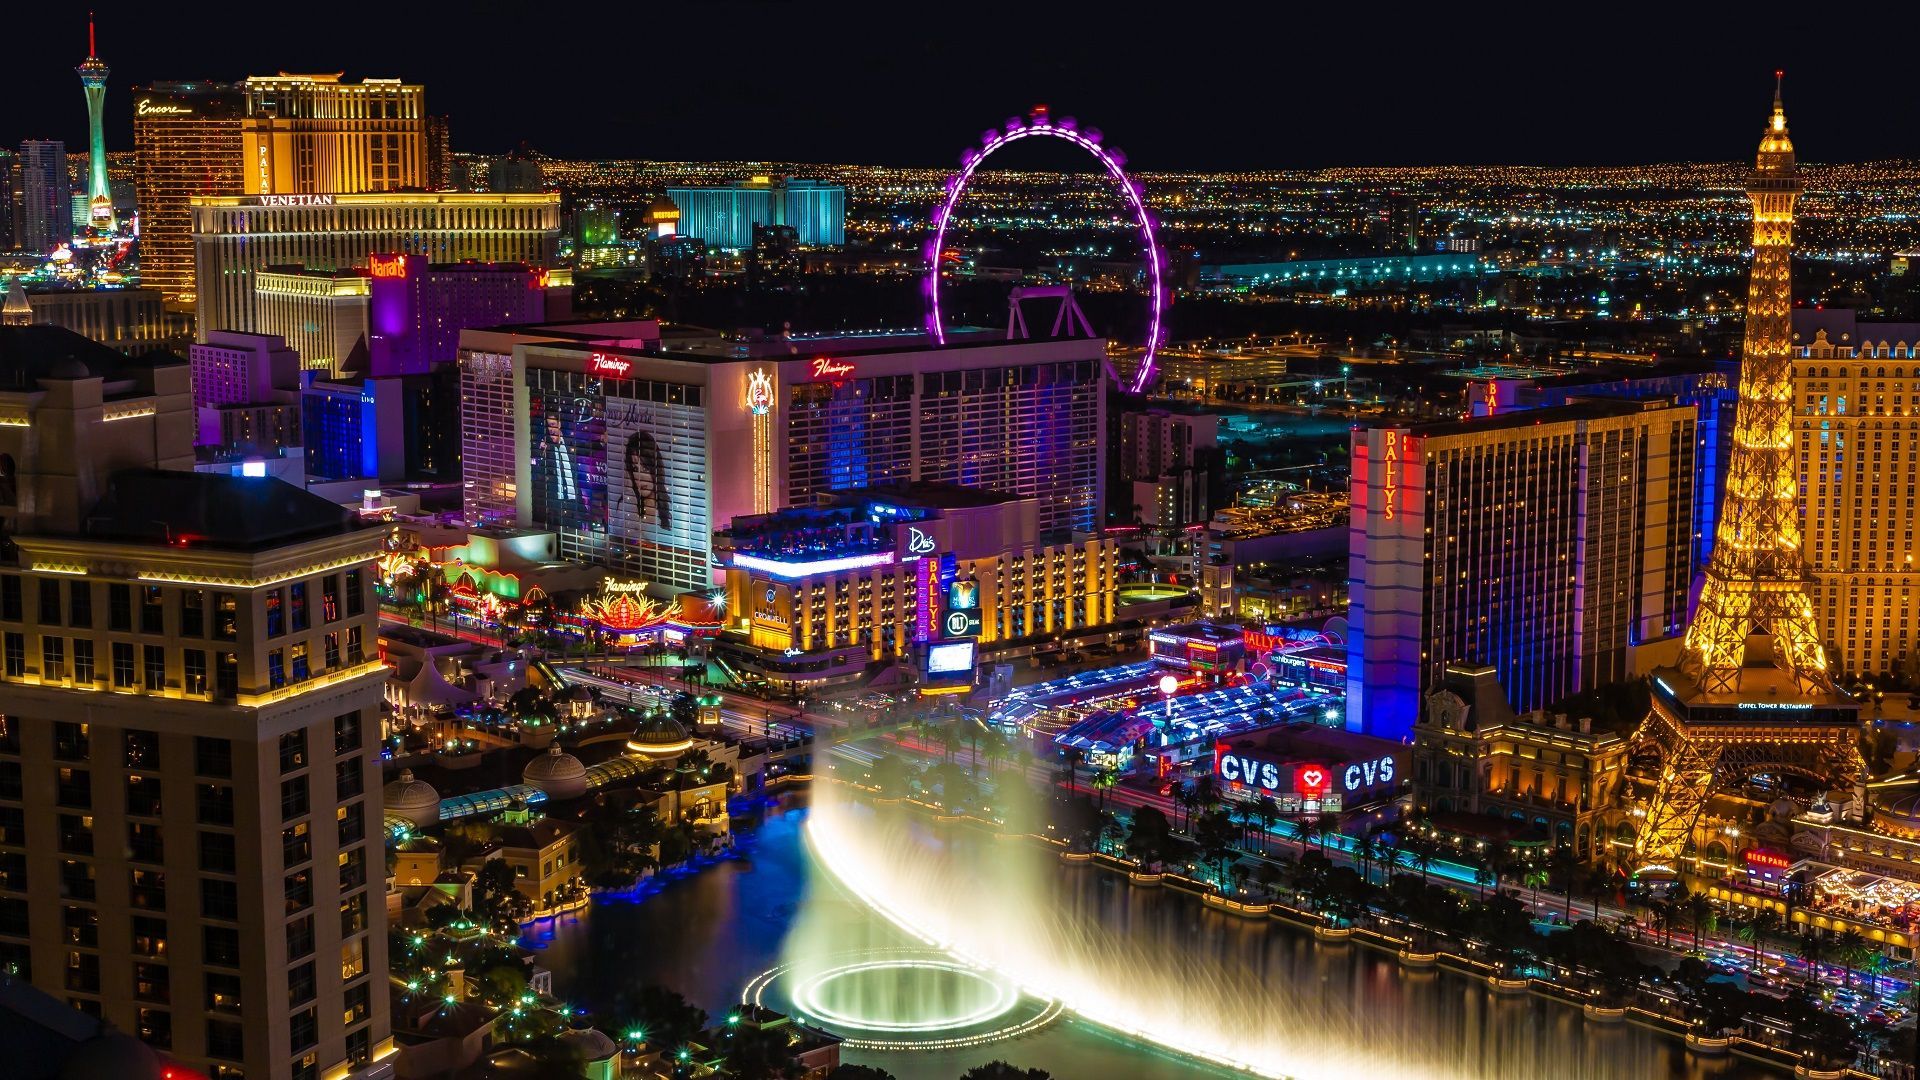 Bellagio Las Vegas Fountain Show at Night - Food Fun & Faraway Places